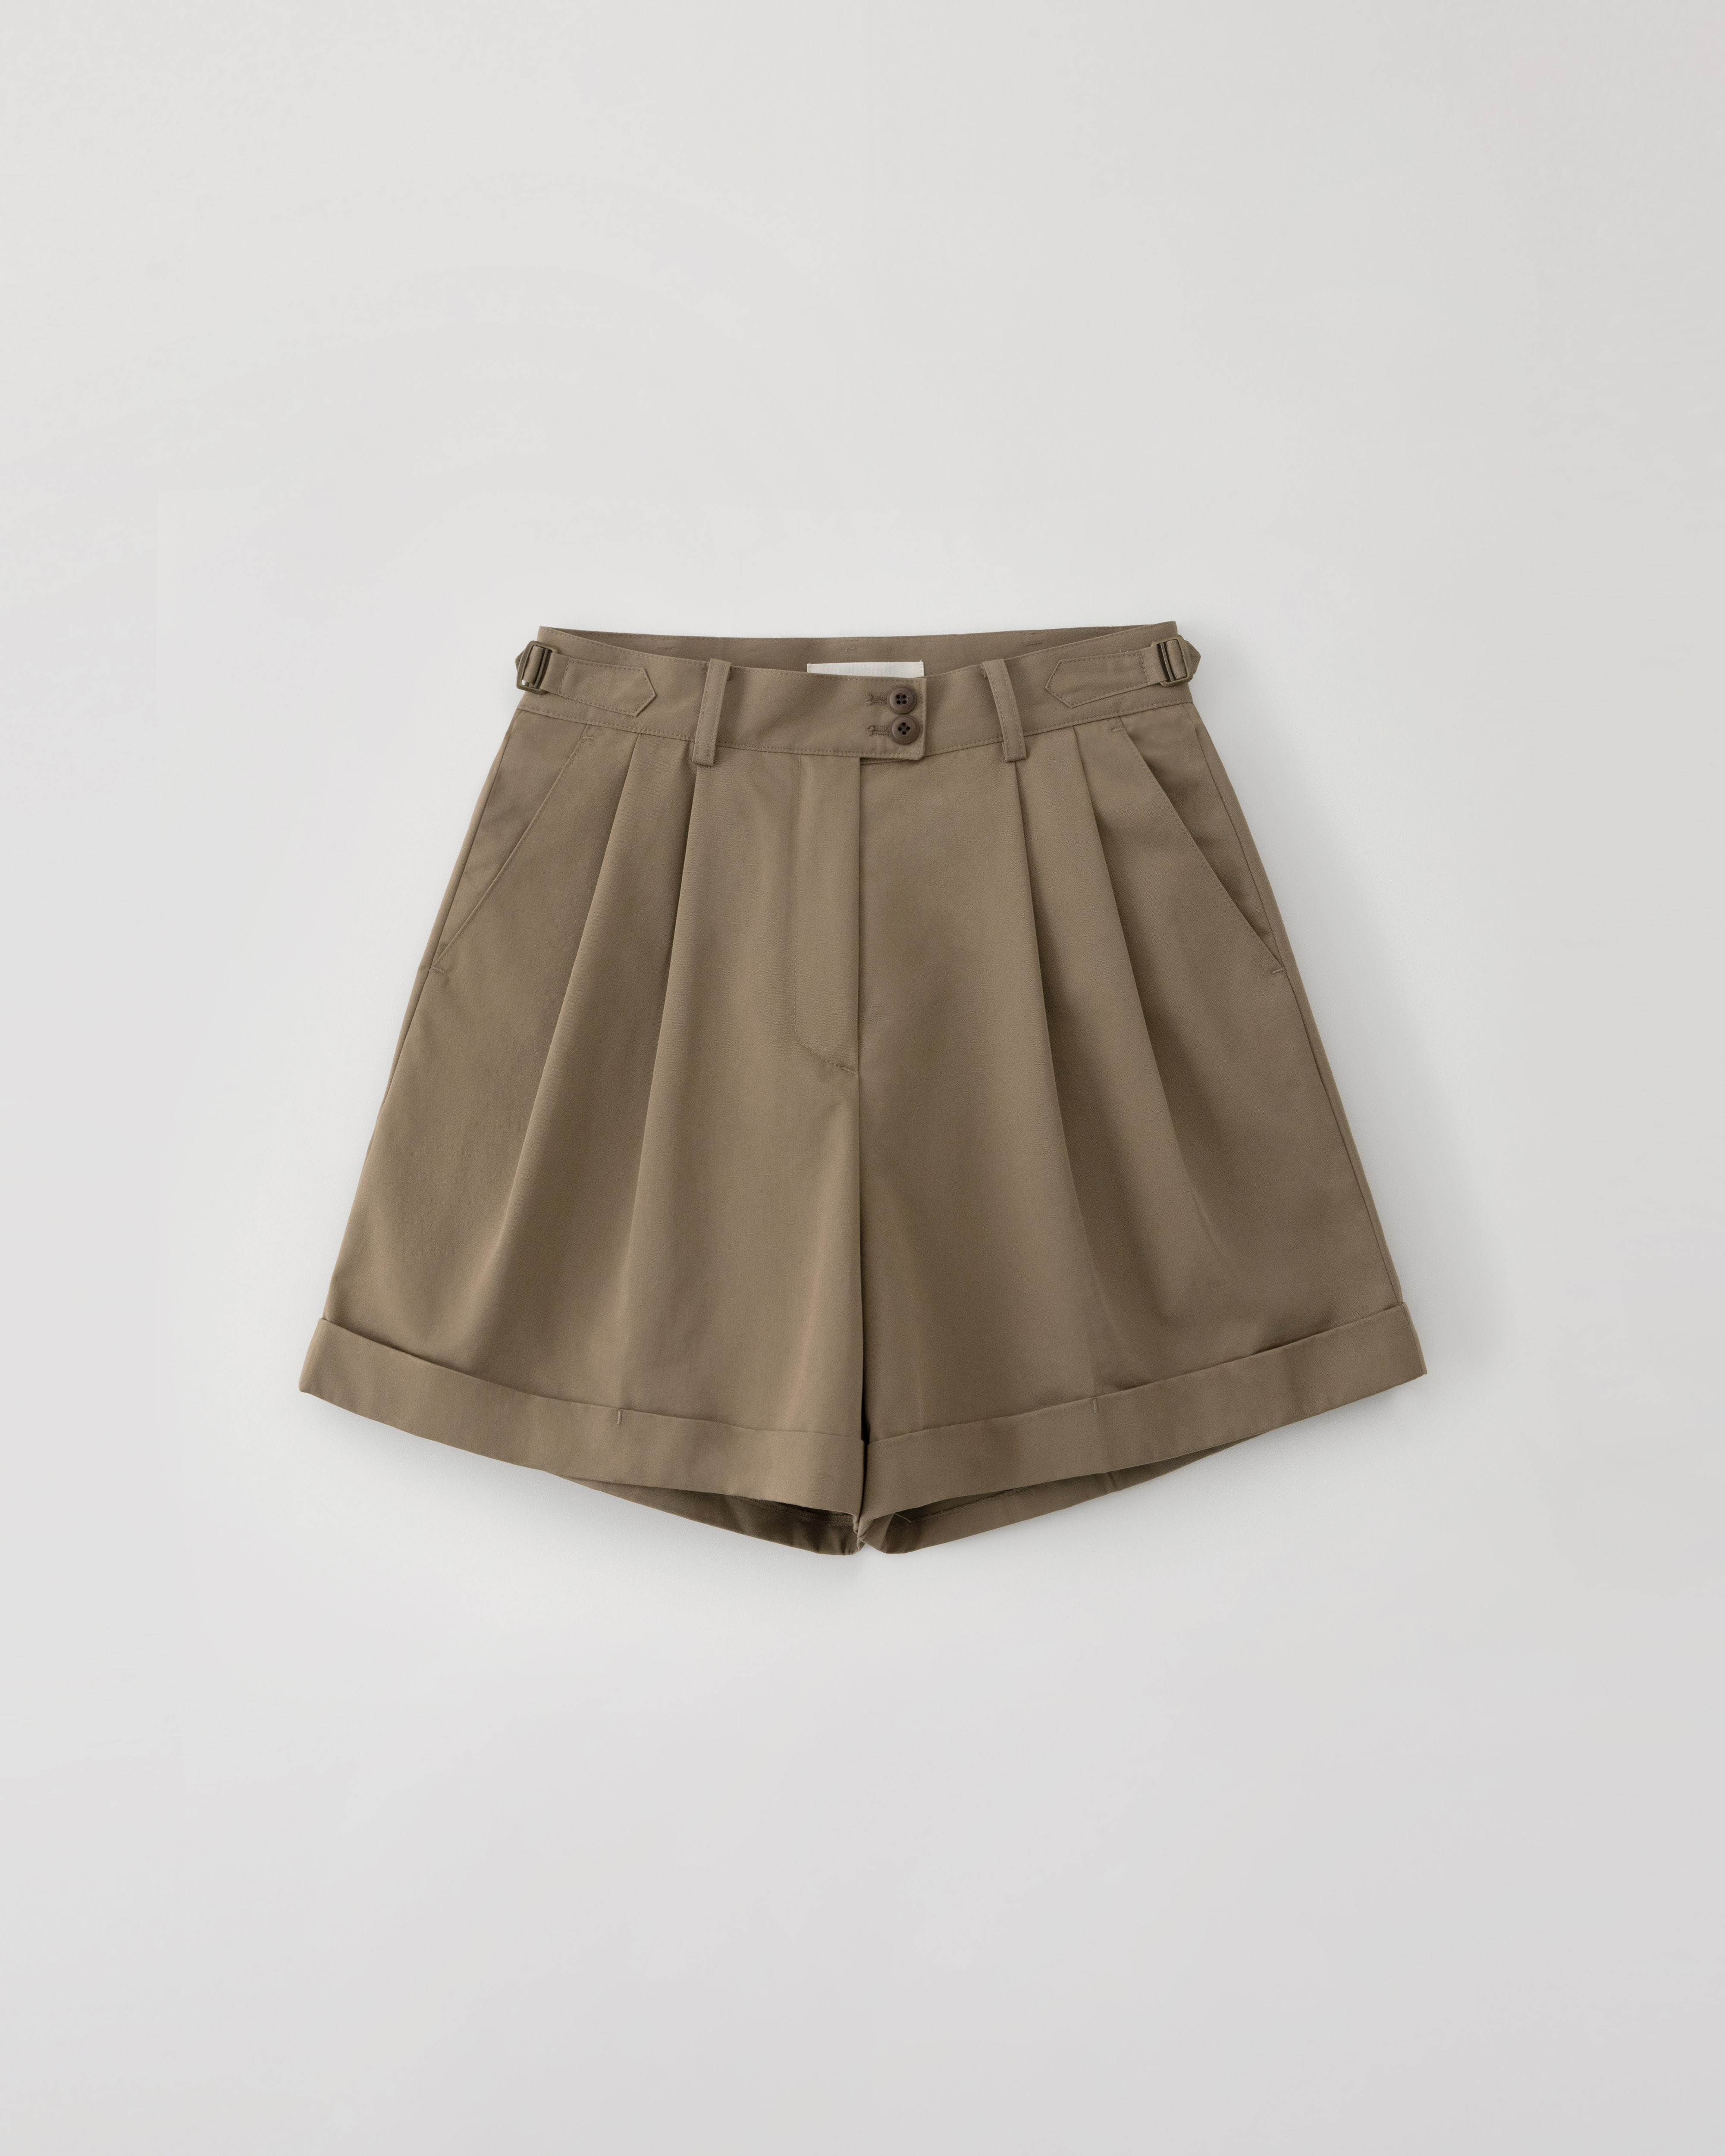 Winnona travel shorts - mocha brown